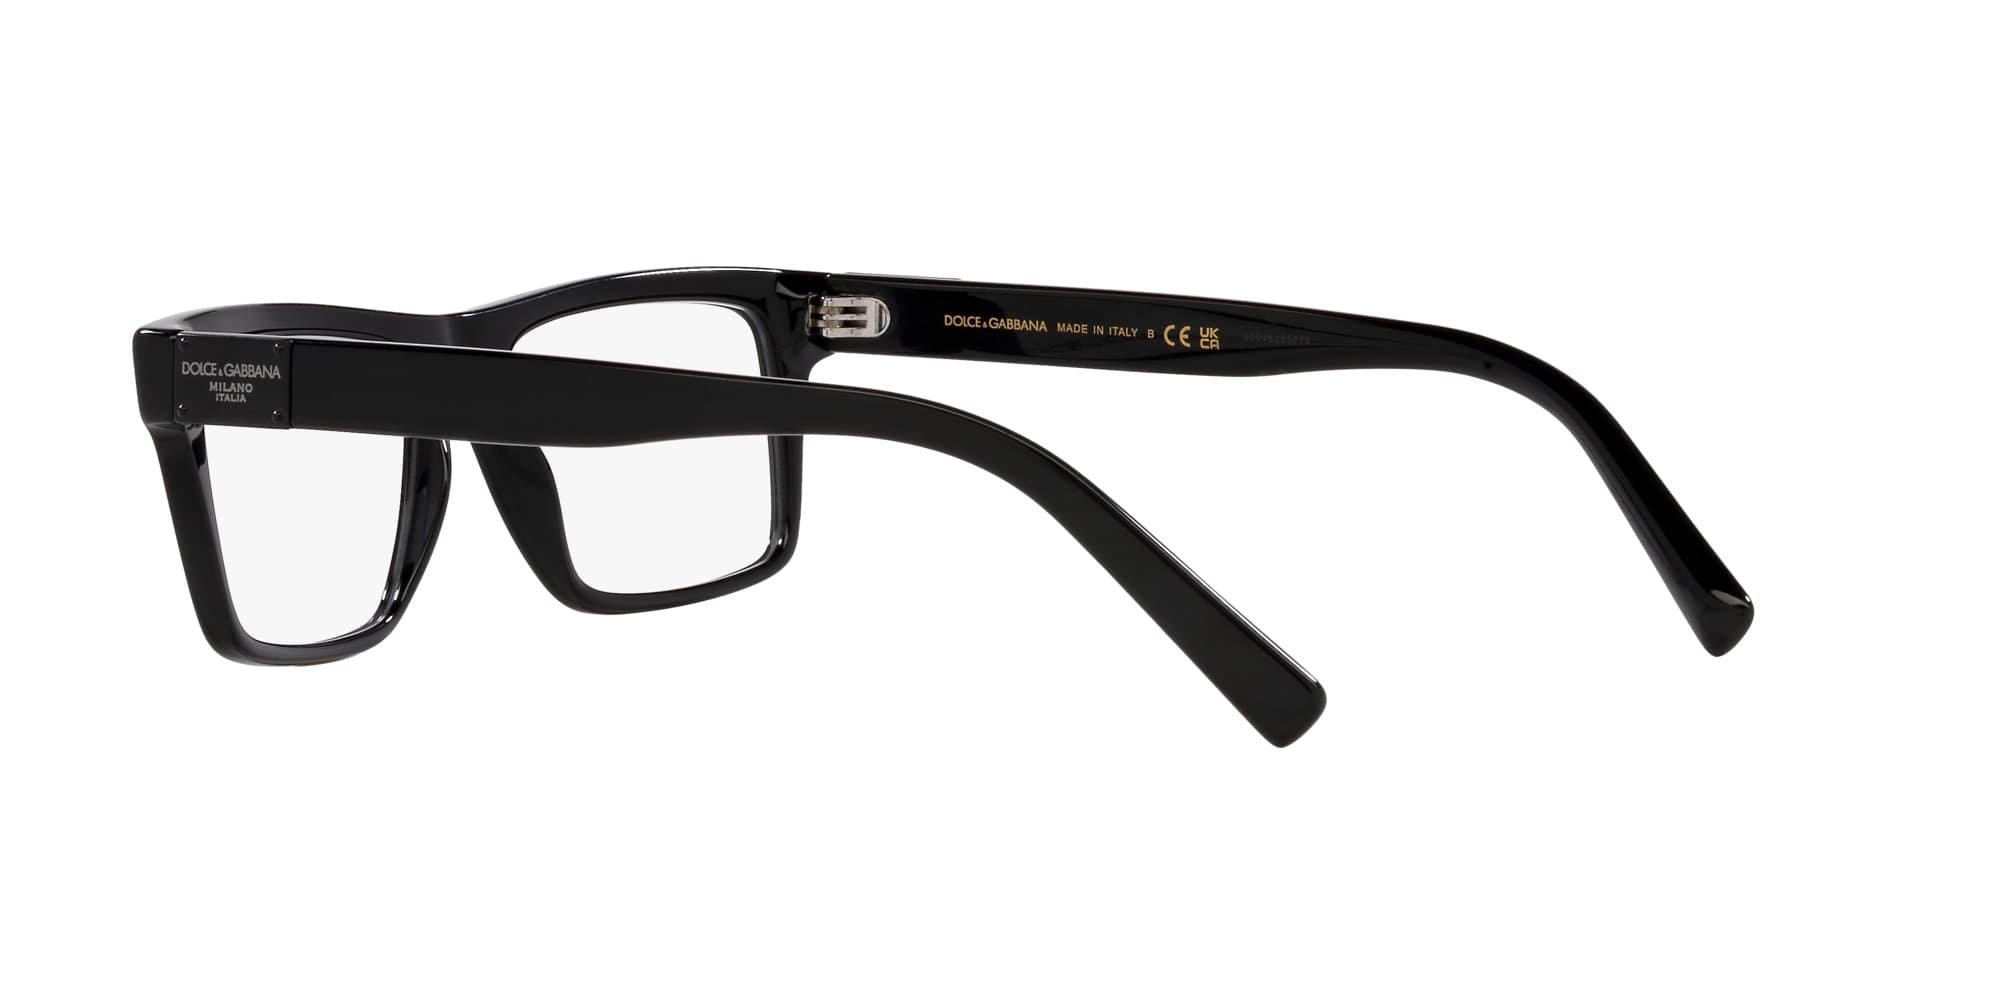 Das Bild zeigt die Korrektionsbrille DG3368 501 von der Marke D&G in schwarz.